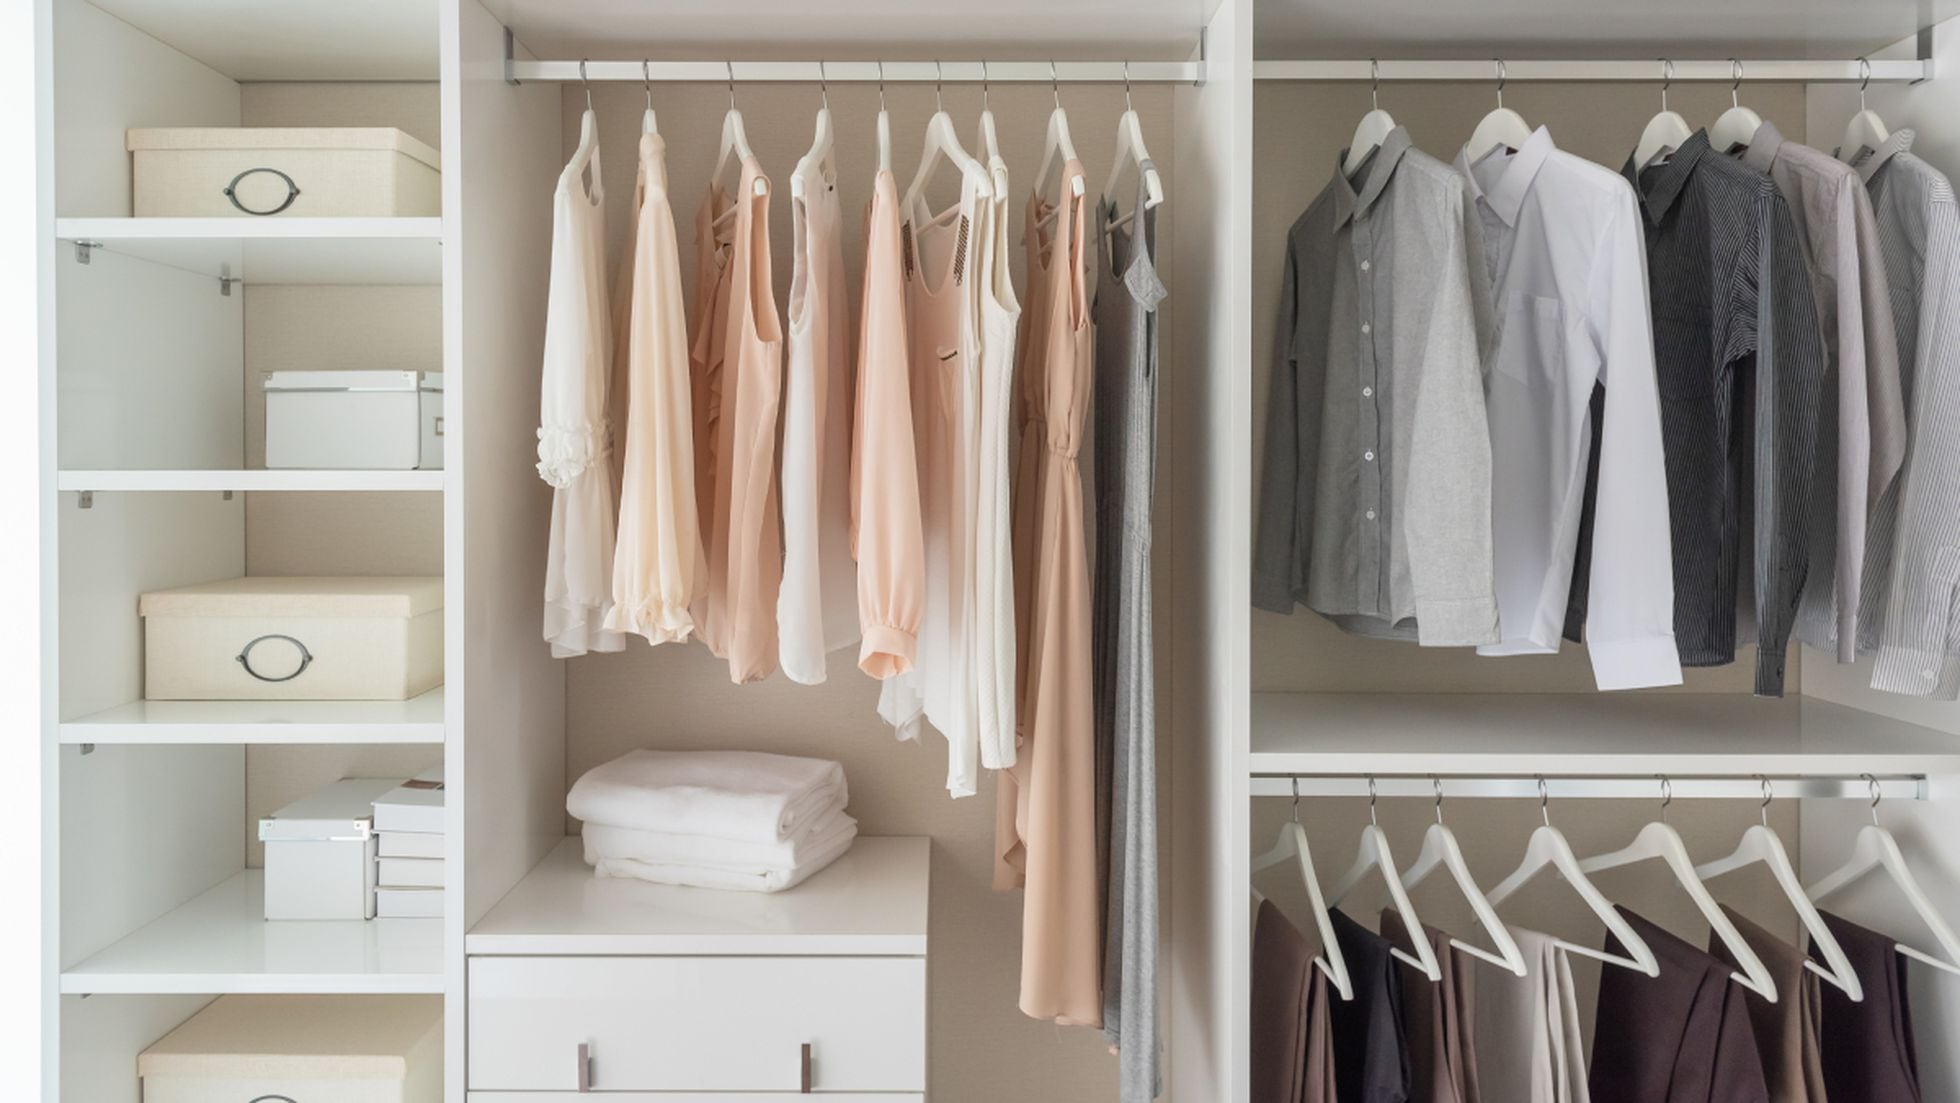 Humedad en los armarios: dos trucos caseros muy fáciles para evitarla